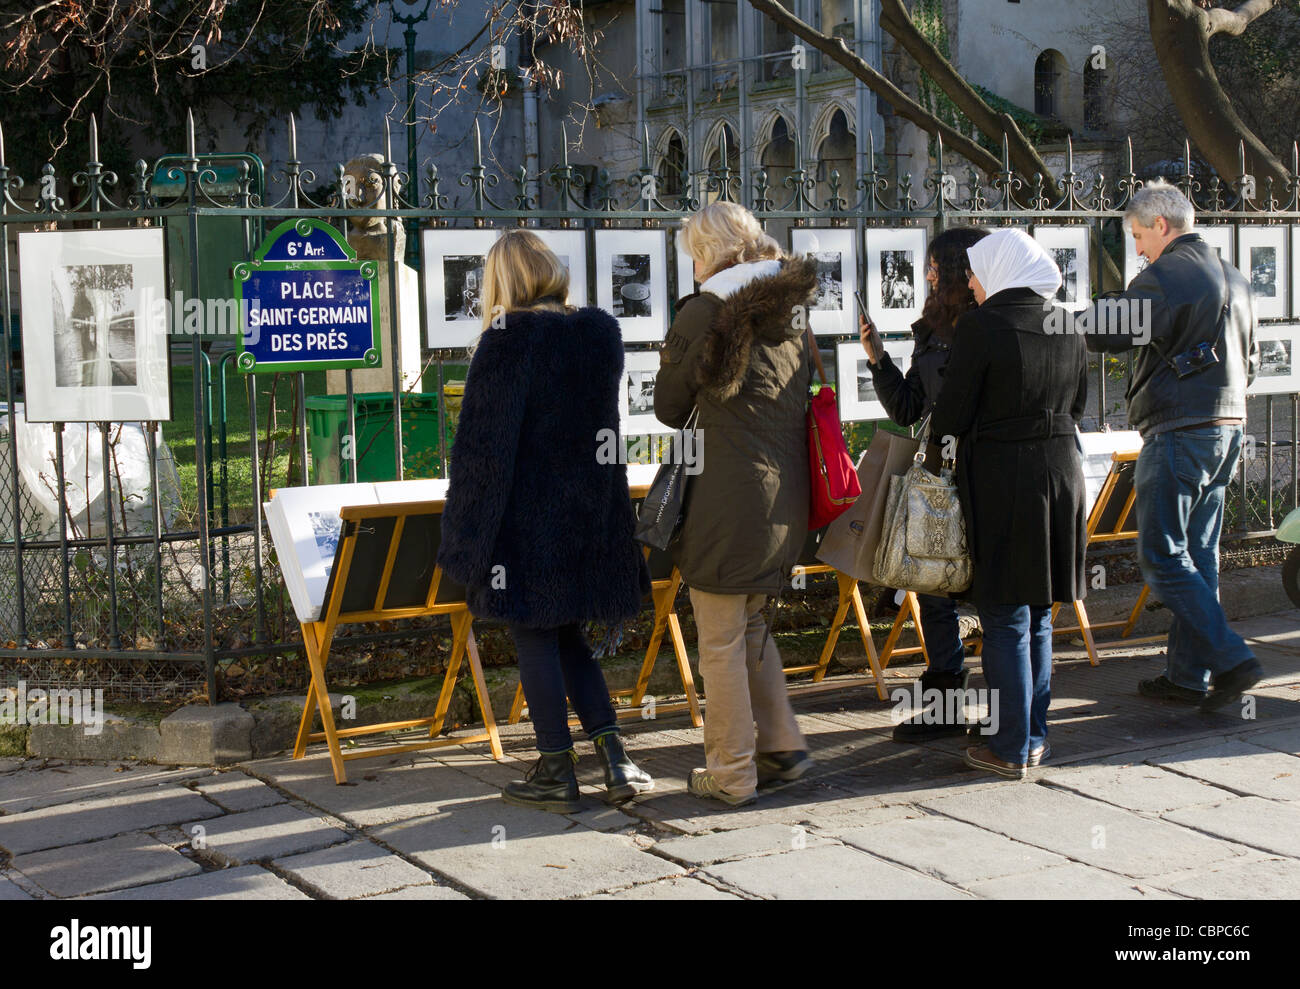 Les gens à la photographie de rue, décrochage place Saint-Germain des Prés, Paris, France Banque D'Images